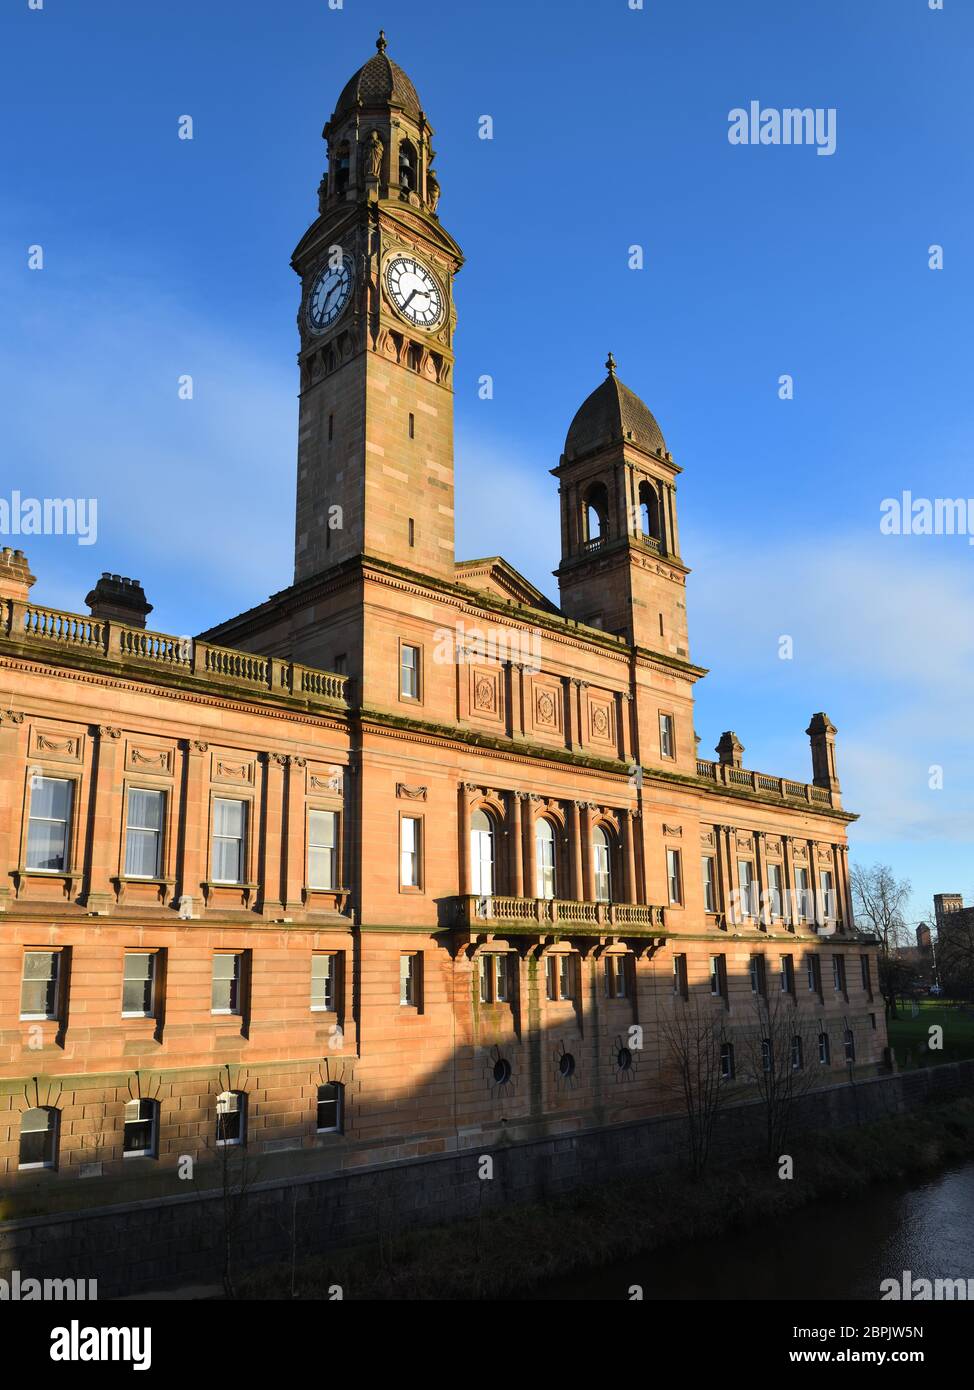 Il retro della struttura comunale e torre dell'orologio del Municipio di Paisley in Renfrewshire, Scozia, Regno Unito, Europa è un edificio classificato di categoria A. Foto Stock